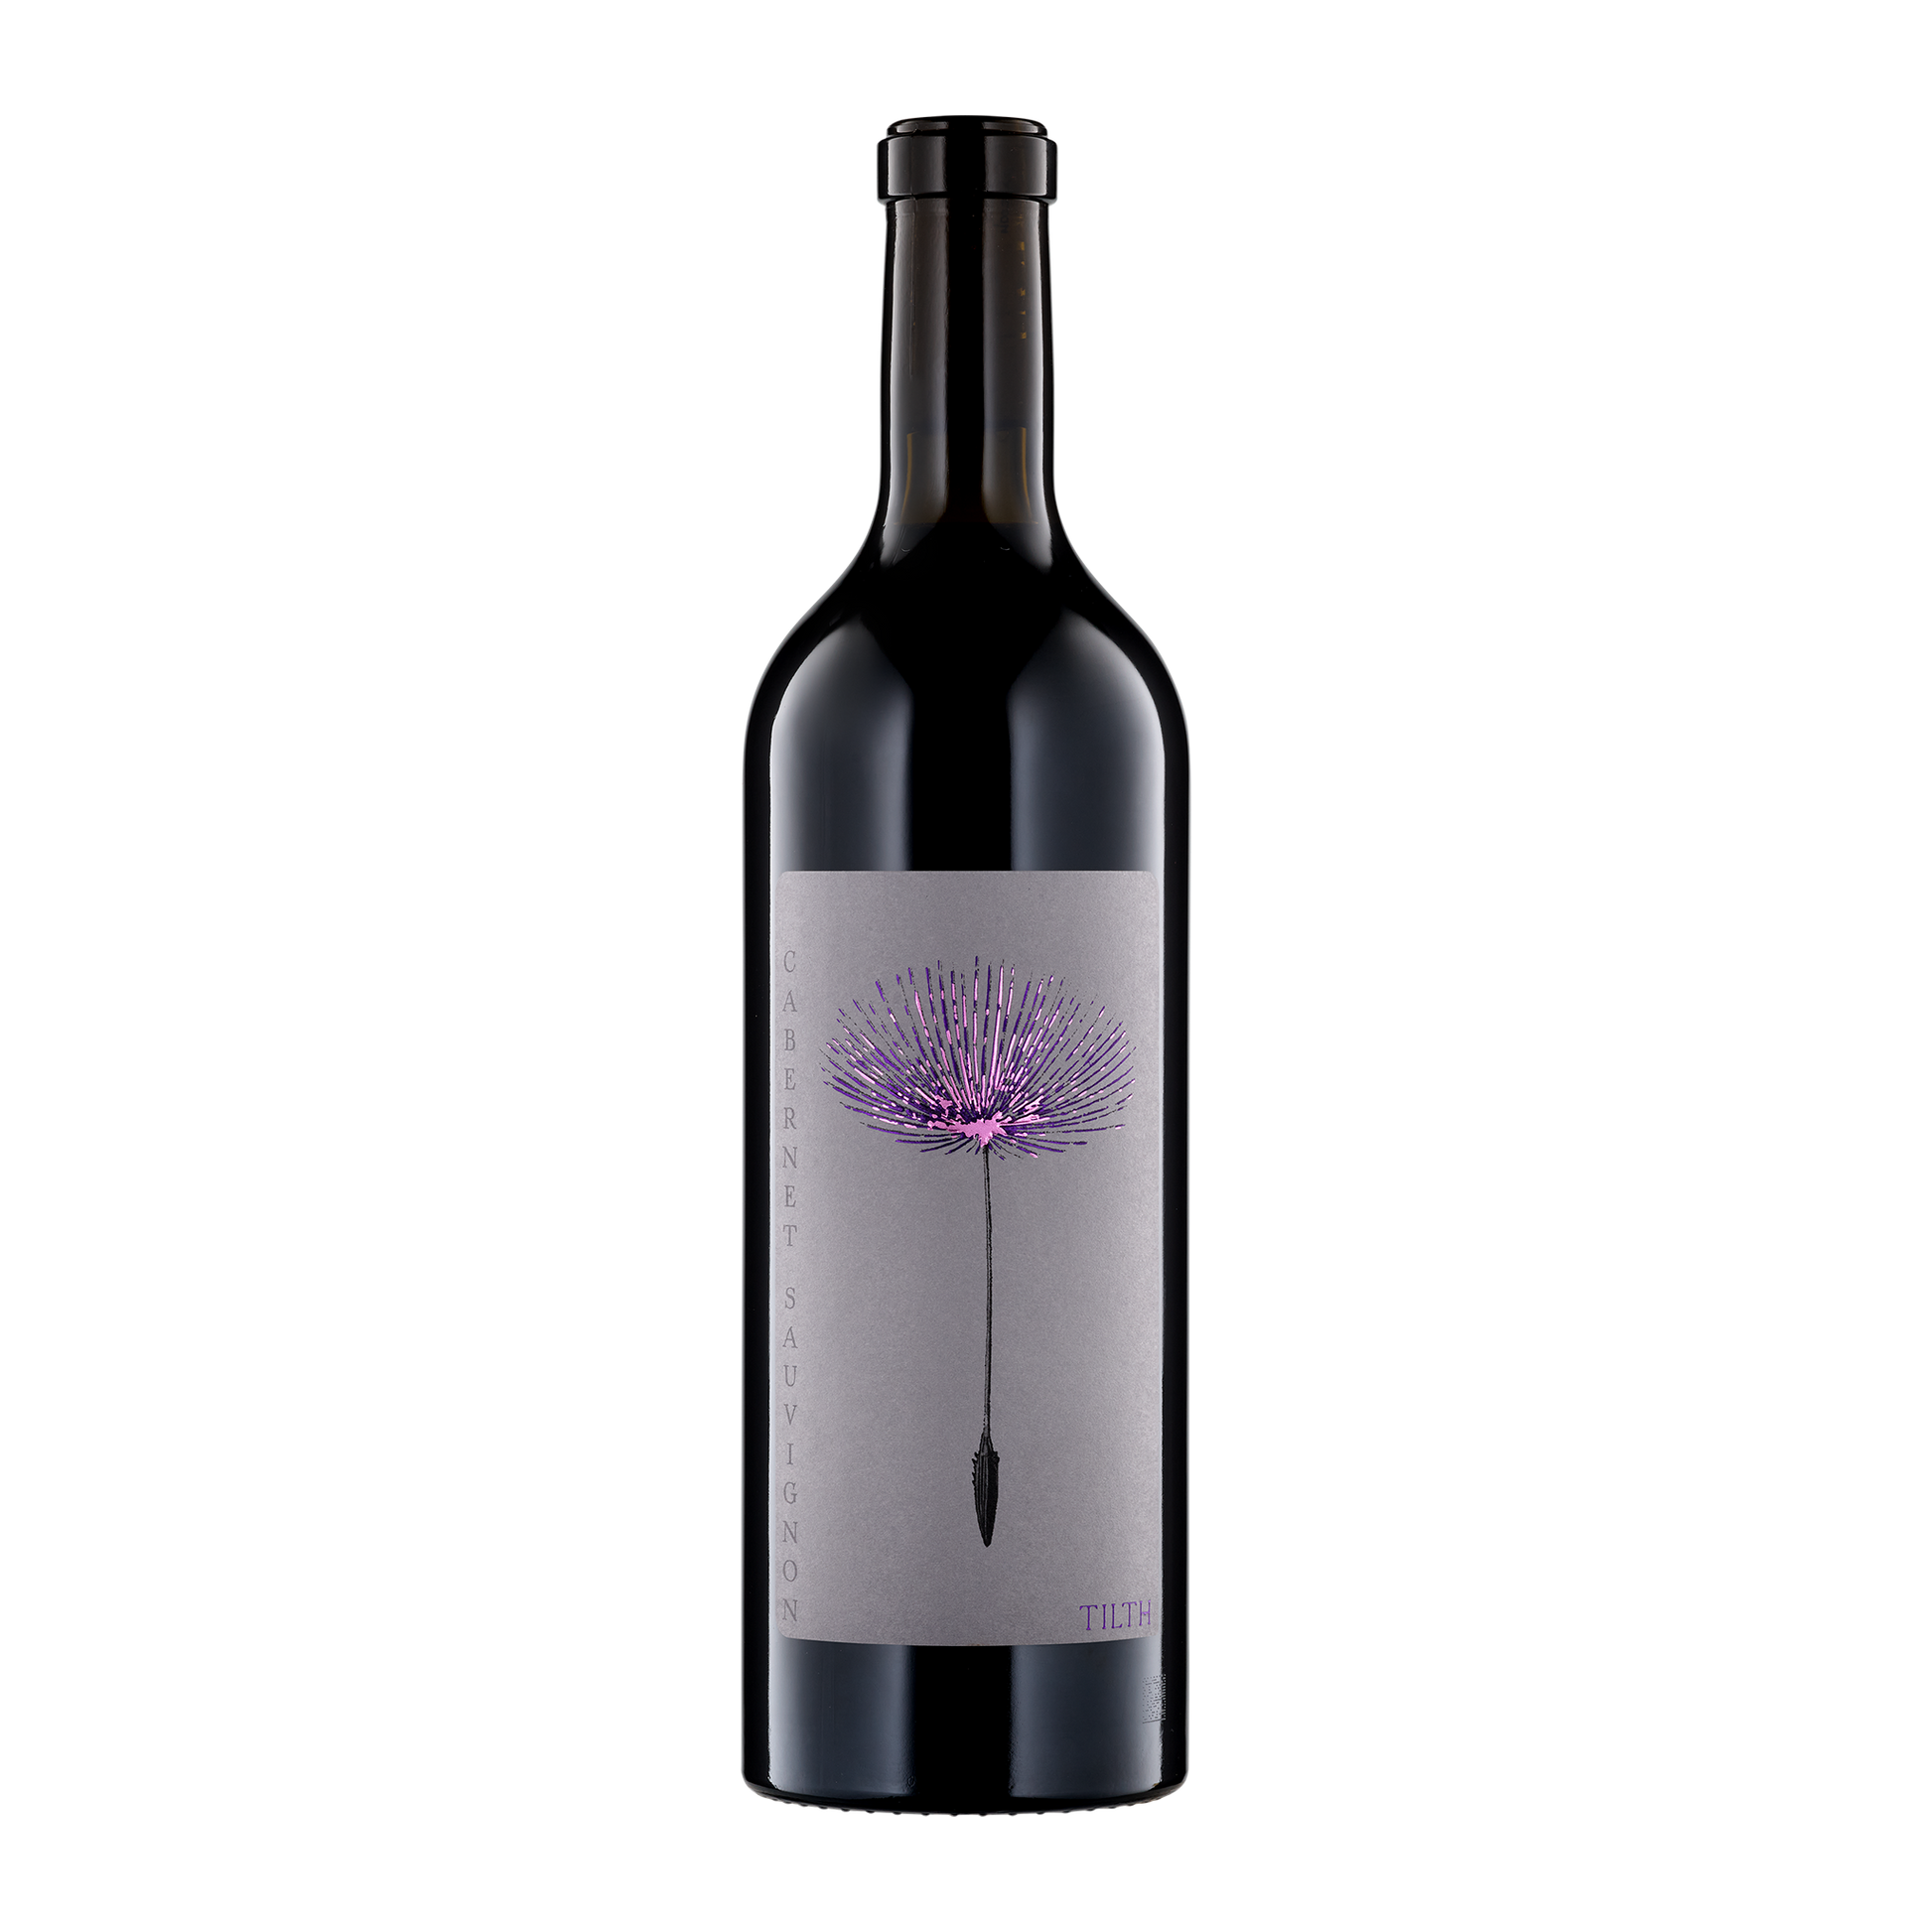 A bottle of Tilth Wines 2019 Cabernet Sauvignon